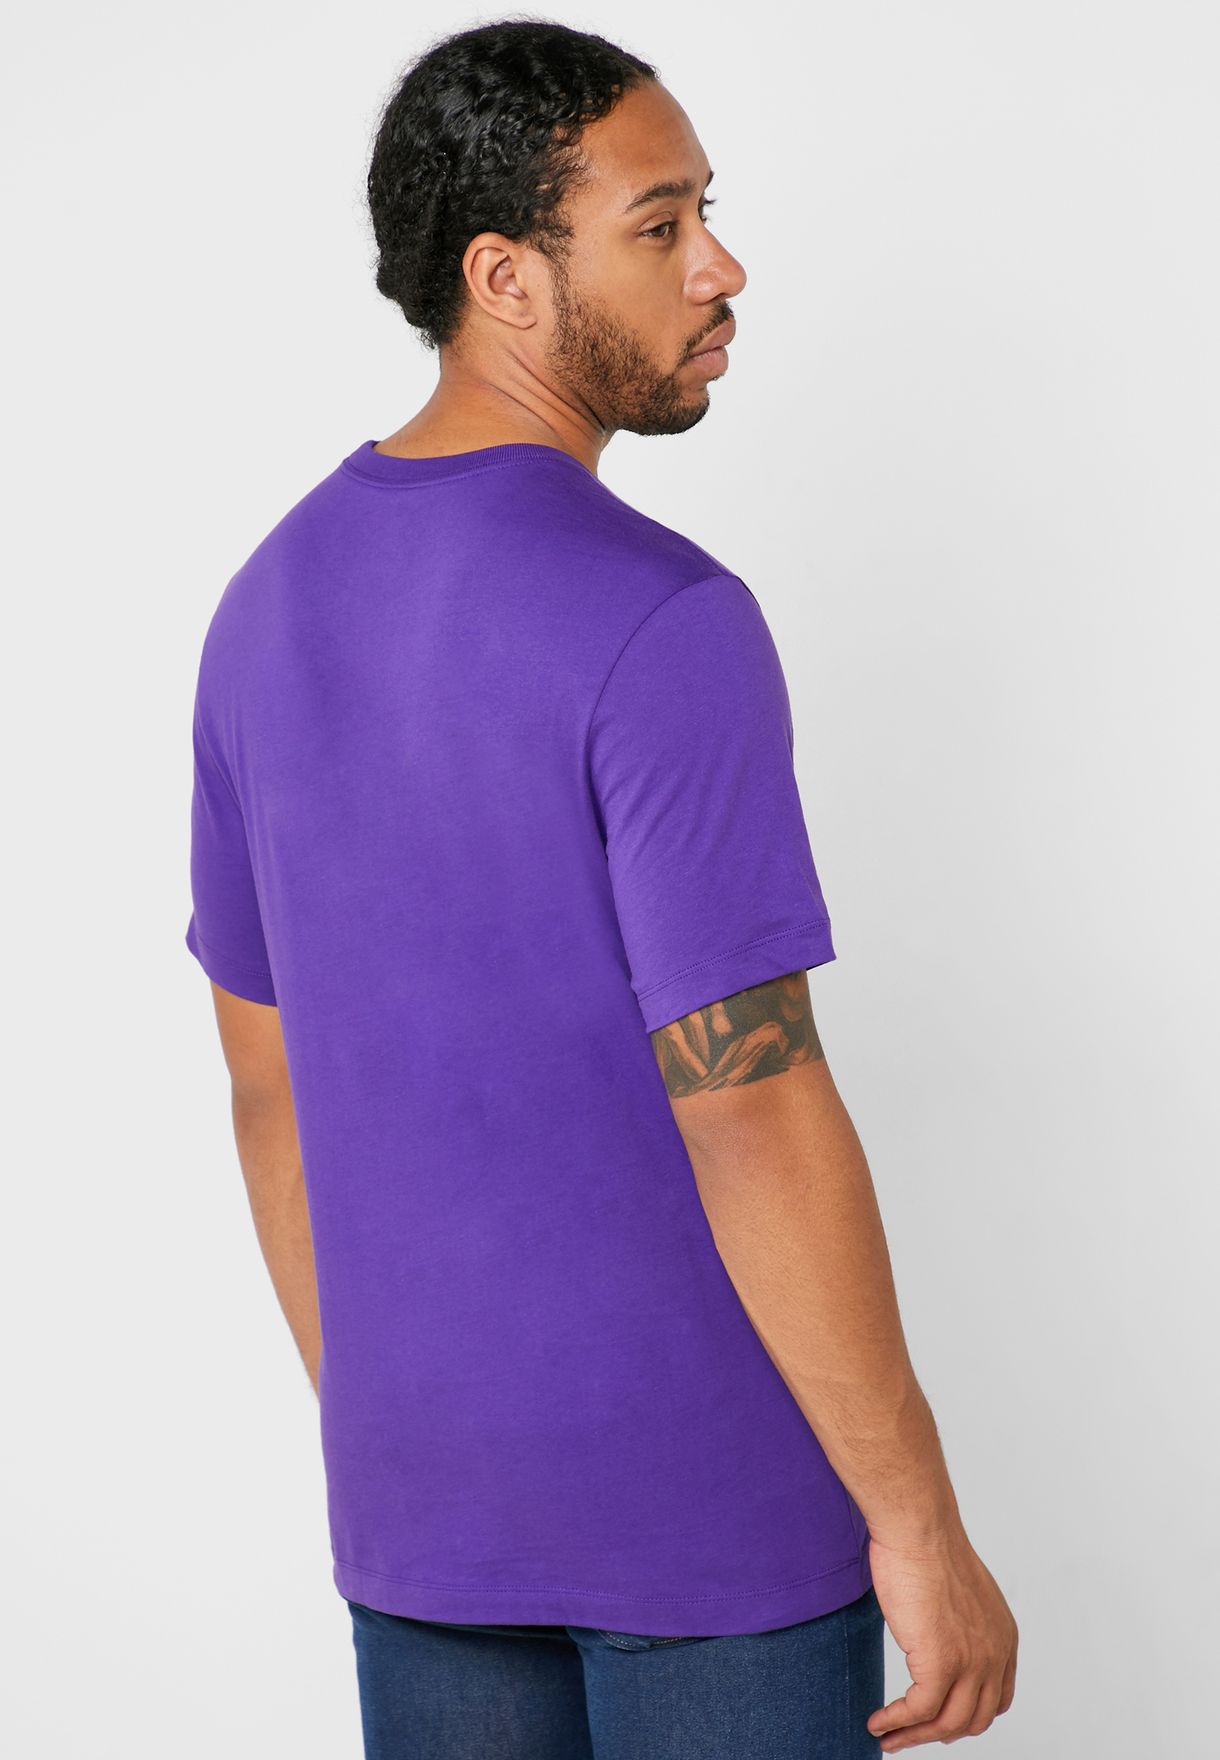 air jordan purple shirt